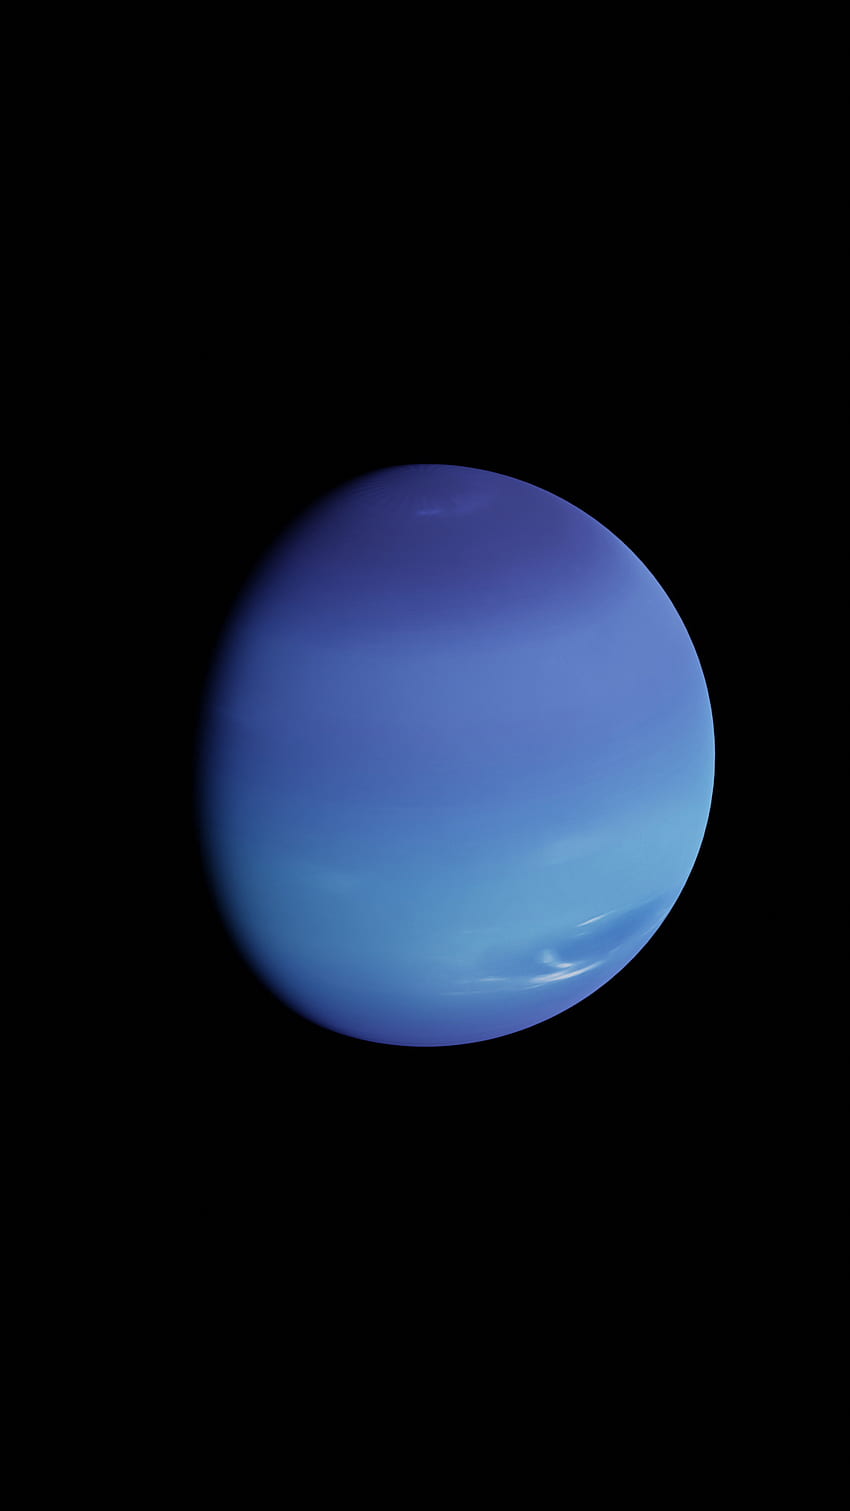 Neptunus, badai, voyager, biru, tata surya, keren, sains, matahari, luar angkasa, scifi, angin wallpaper ponsel HD